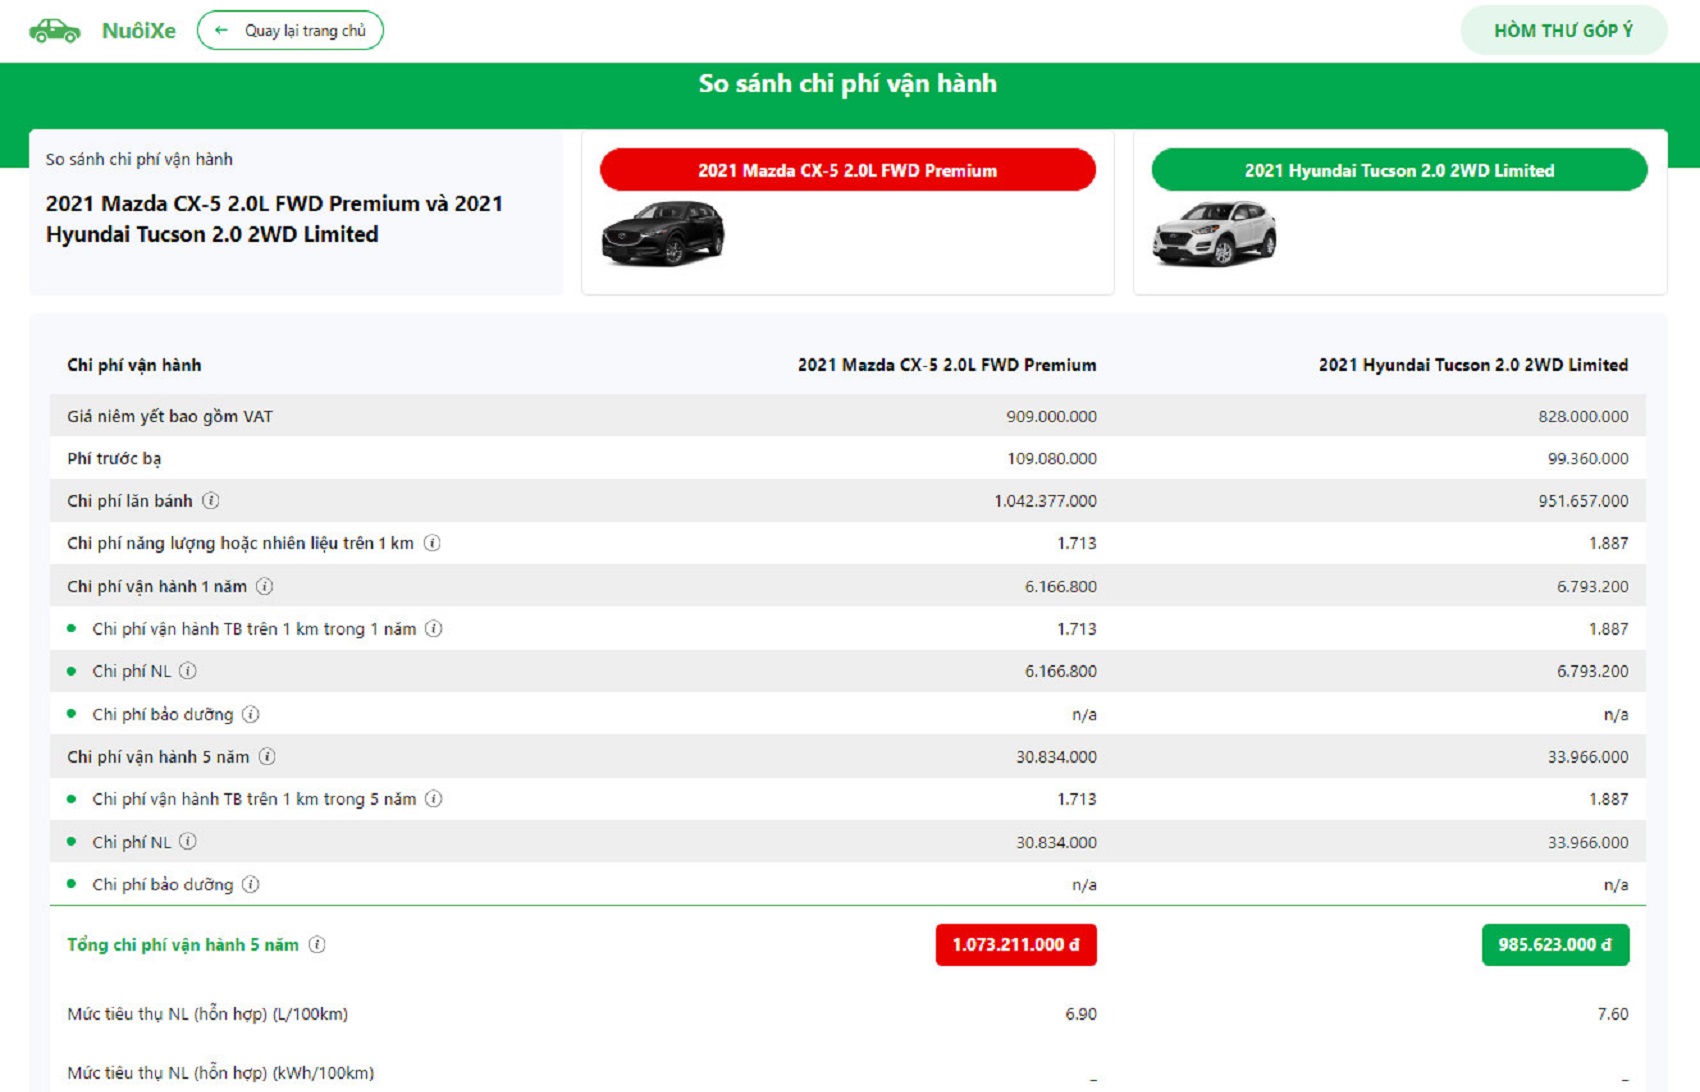 Chính thức giới thiệu nền tảng Nuoixe.vn - Công cụ dễ dàng tính toán chi phí nuôi ô tô